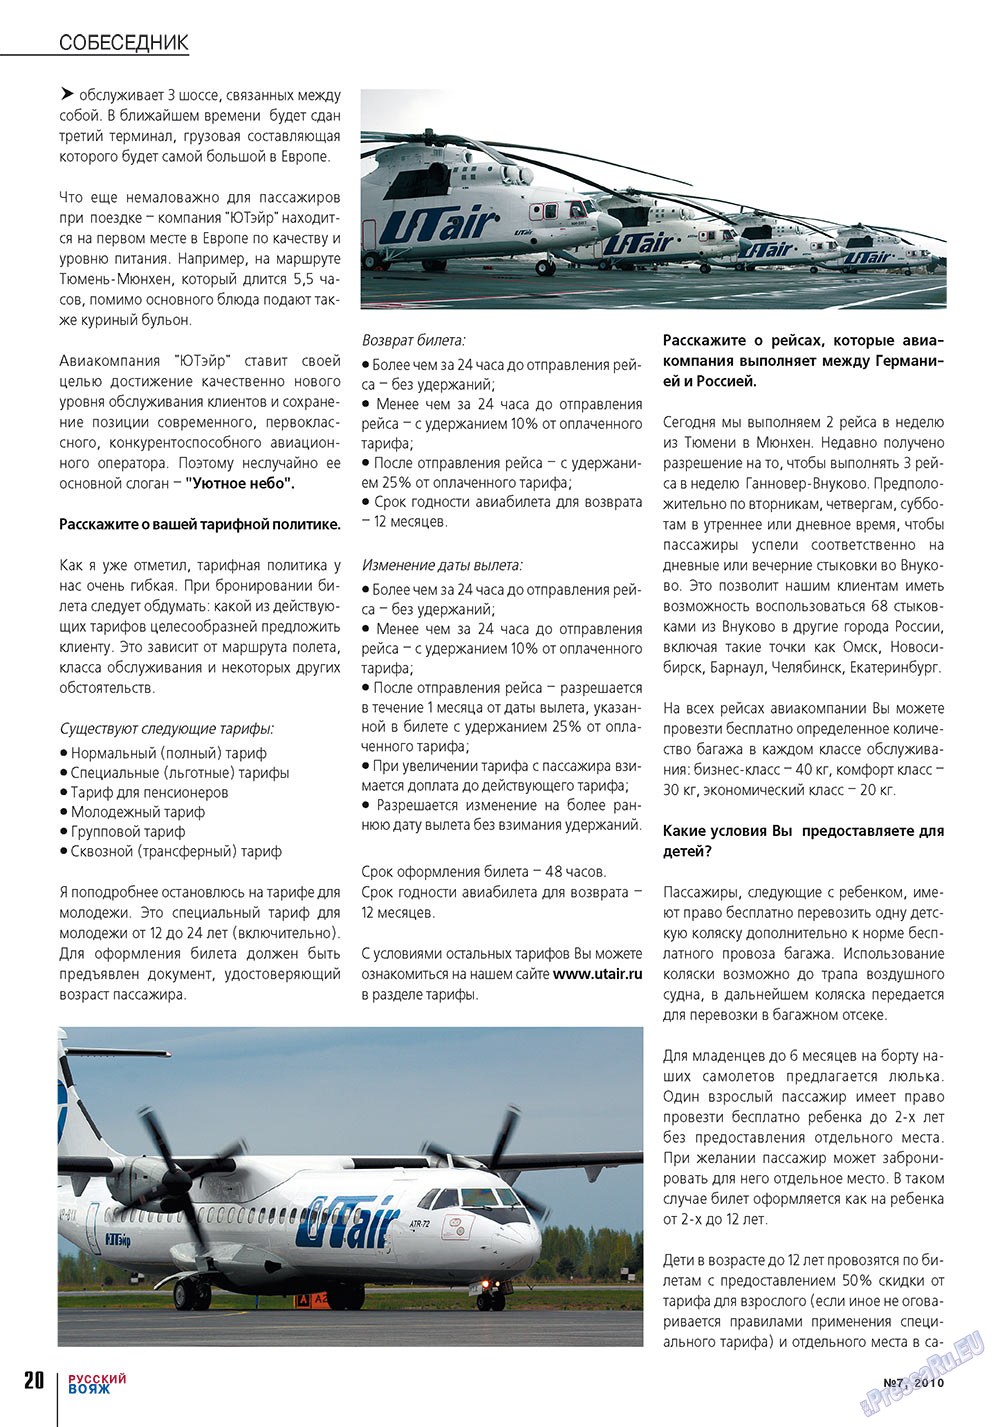 Русский вояж (журнал). 2010 год, номер 7, стр. 20